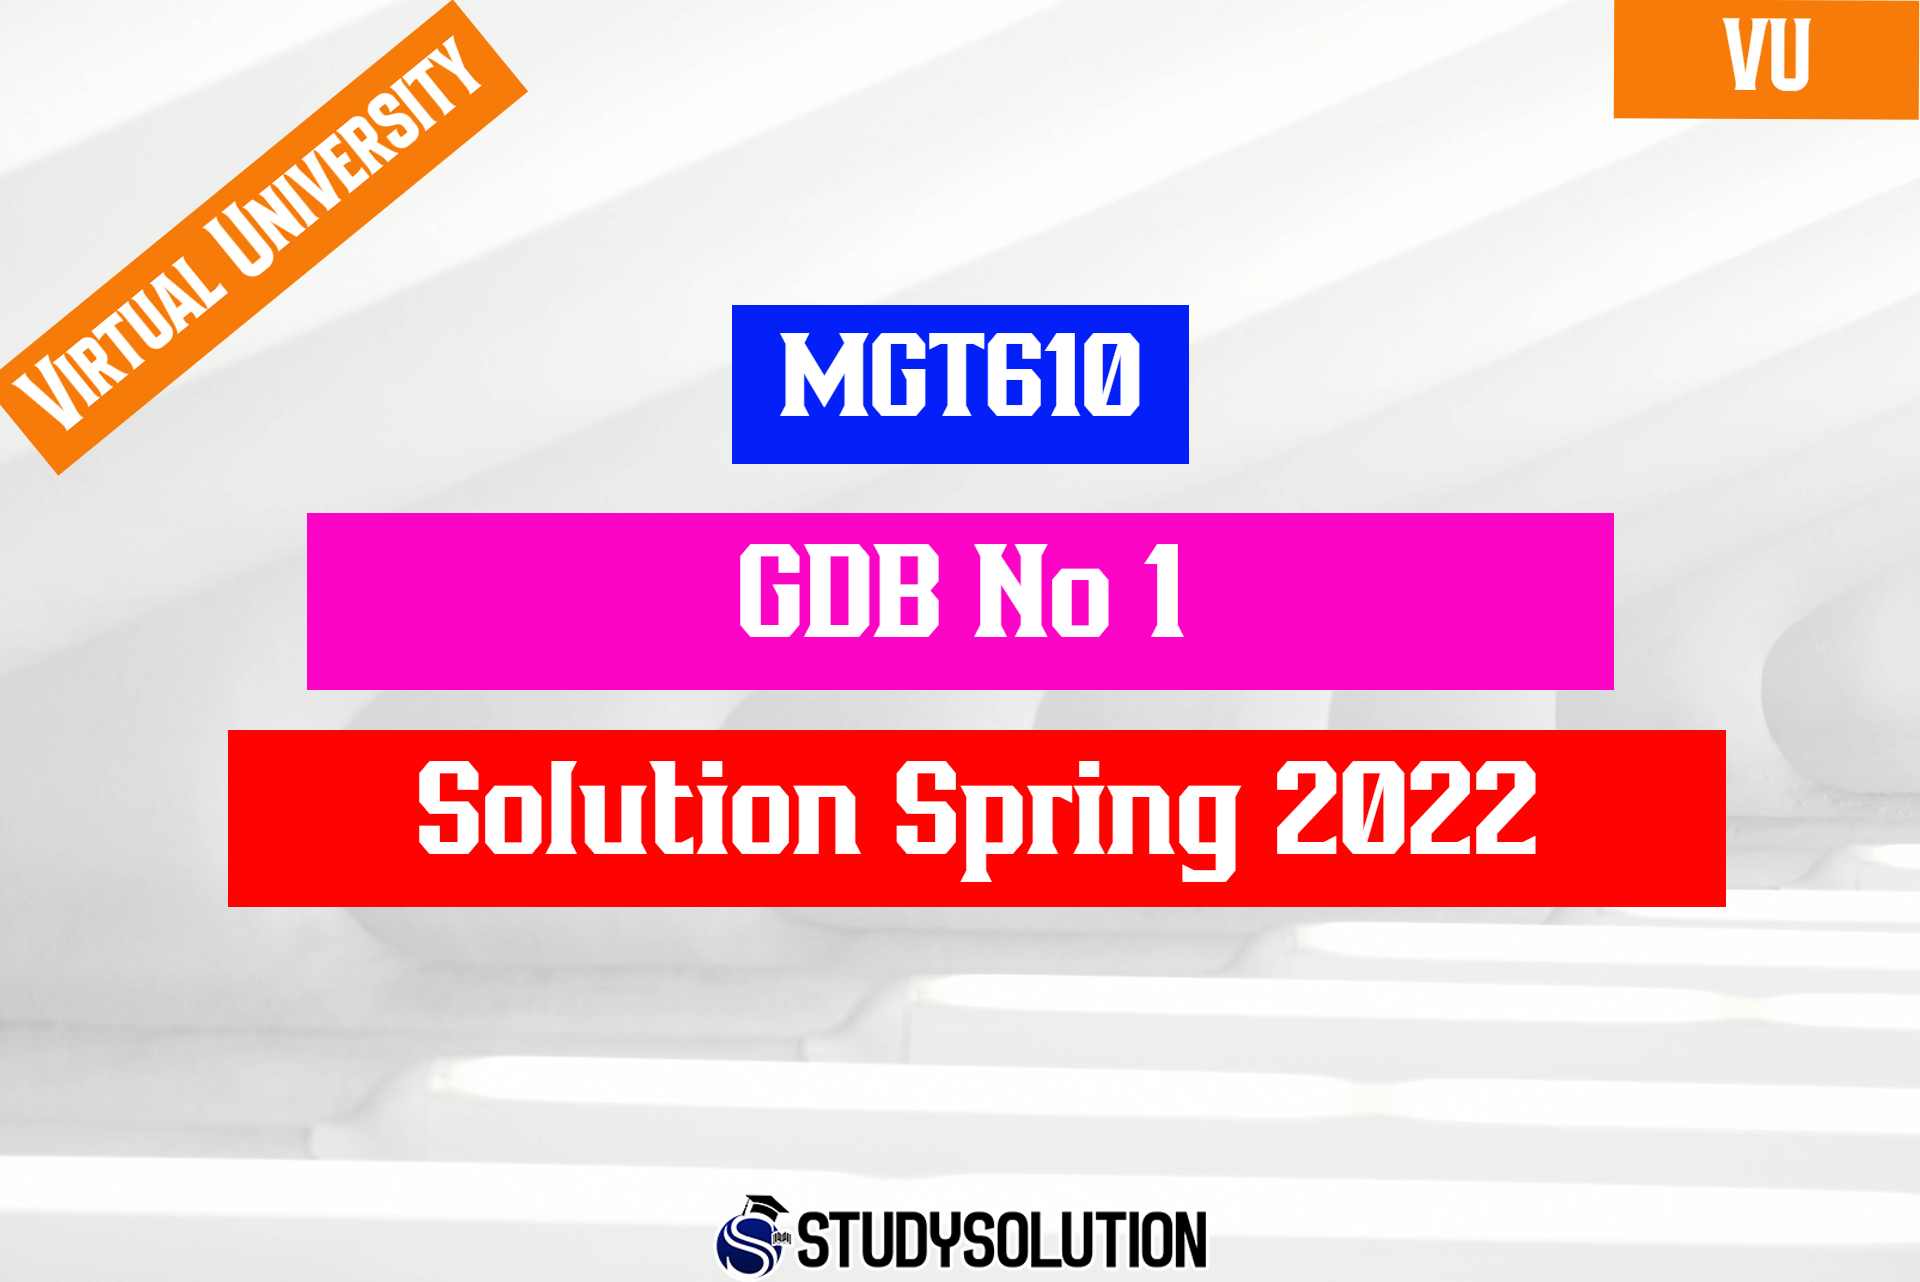 MGT610 GDB No 1 Solution Spring 2022